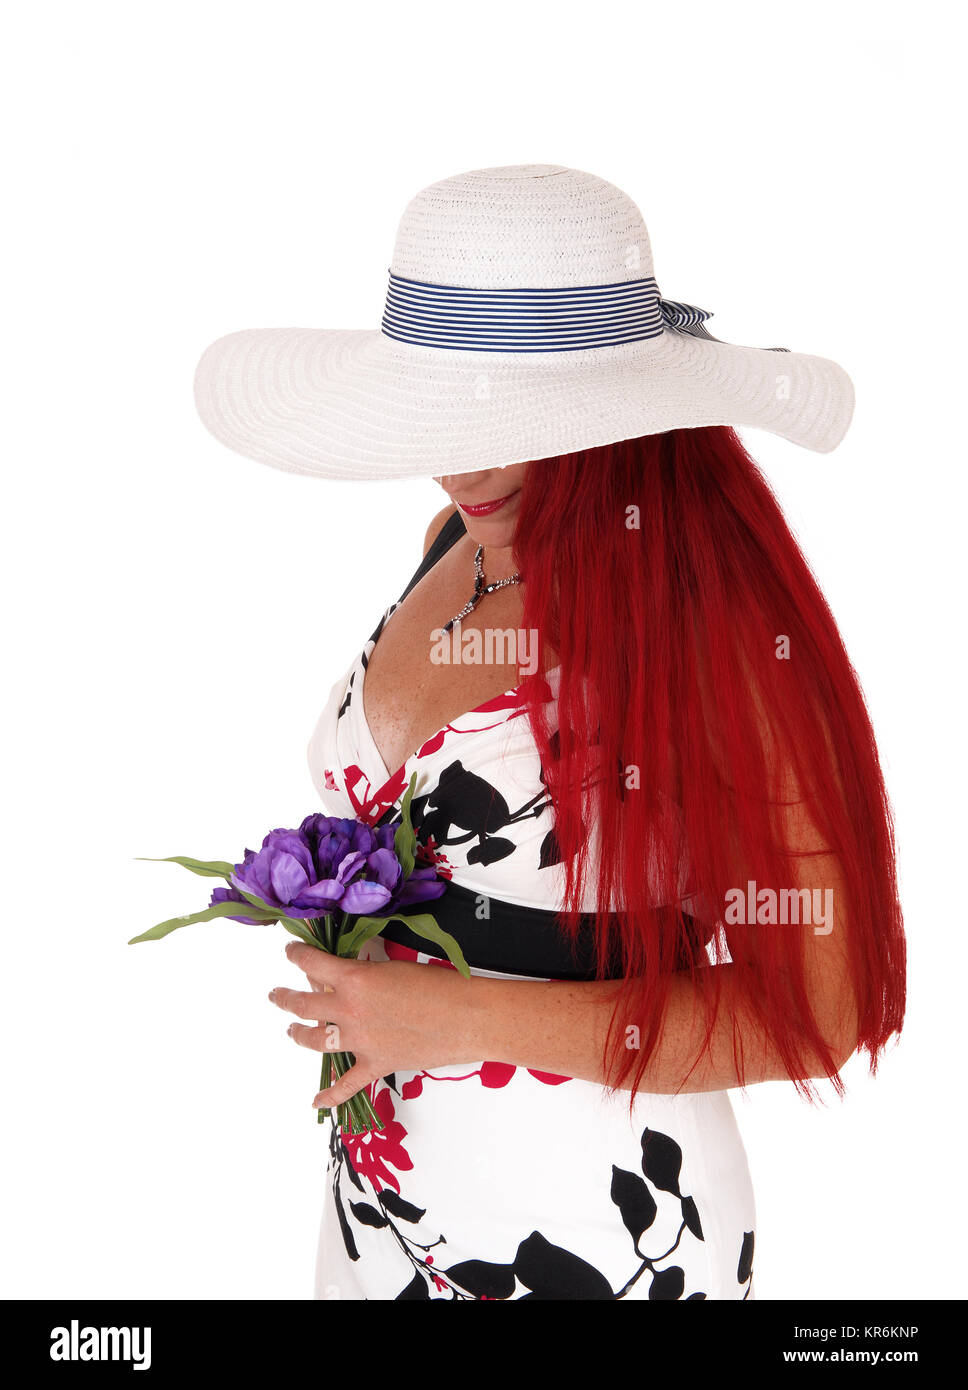 Belle femme avec chapeau Photo Stock - Alamy